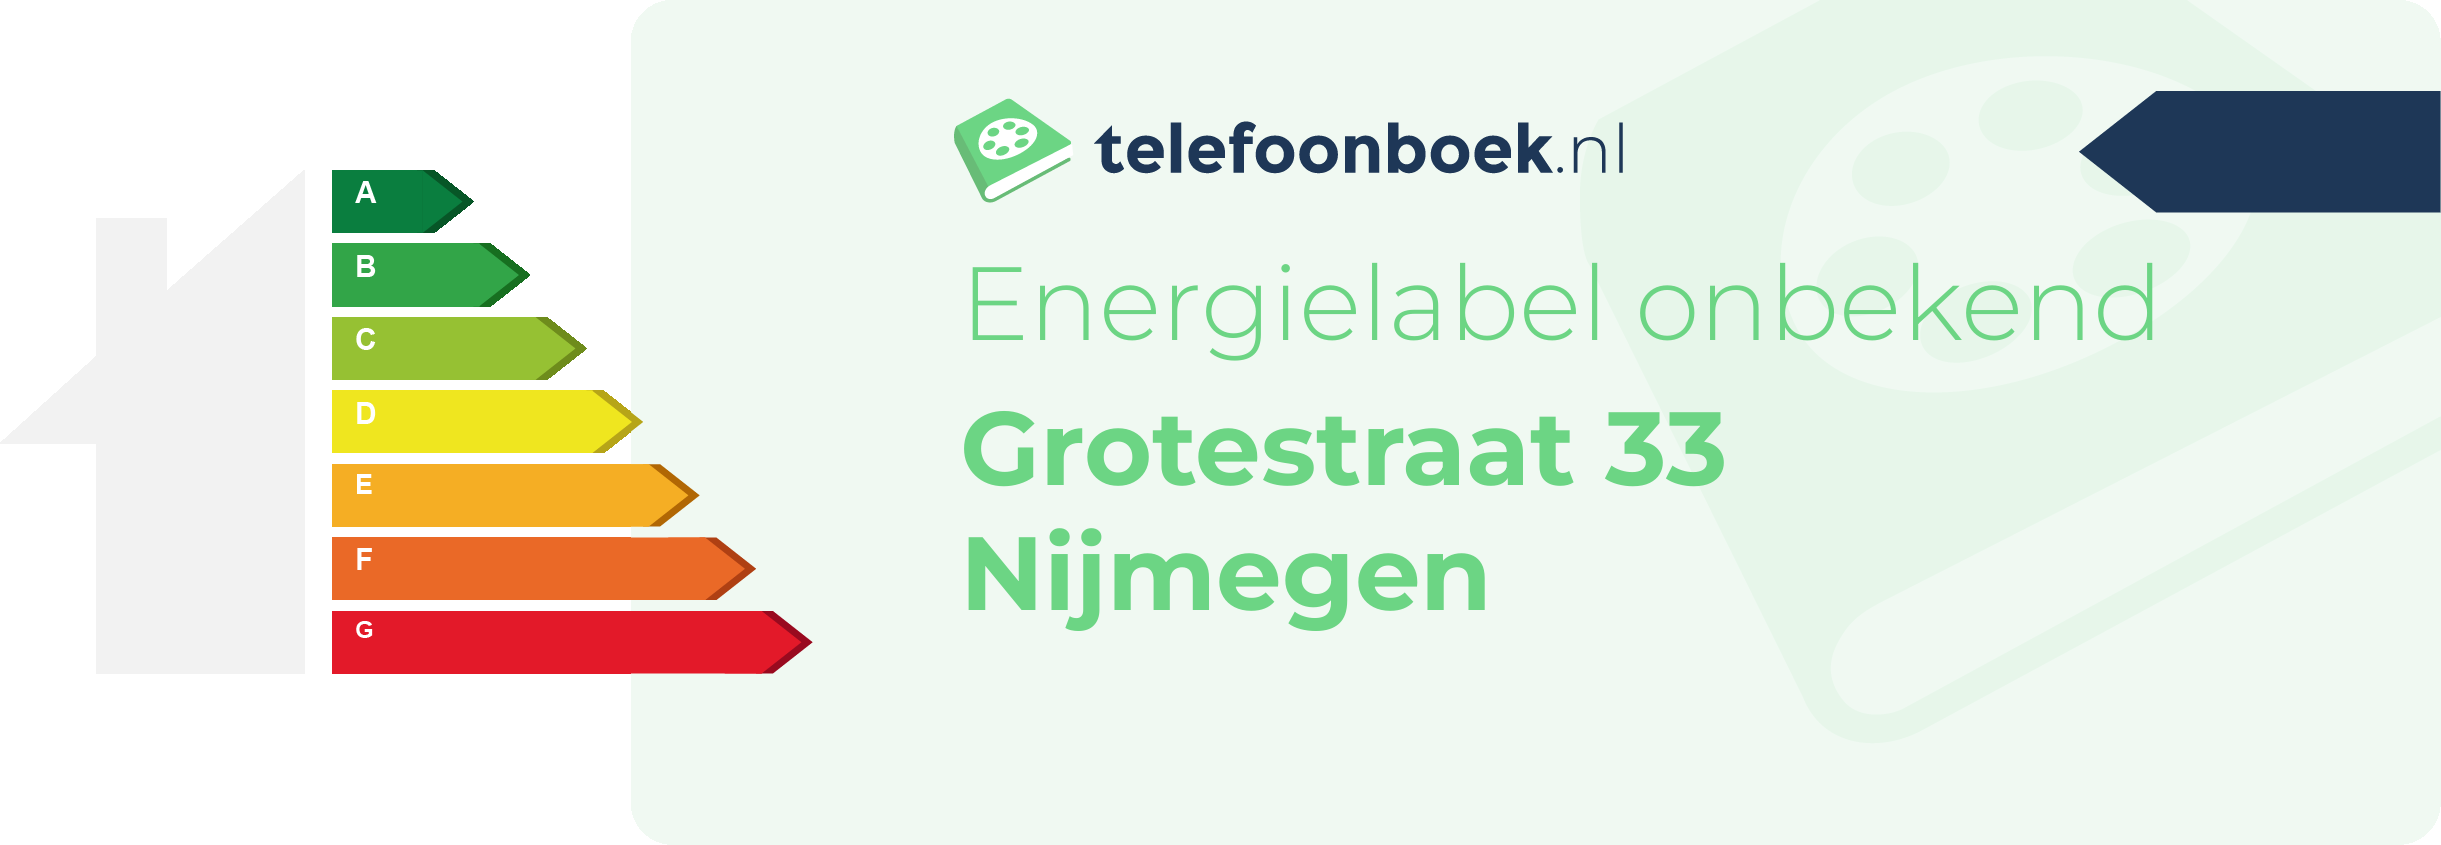 Energielabel Grotestraat 33 Nijmegen